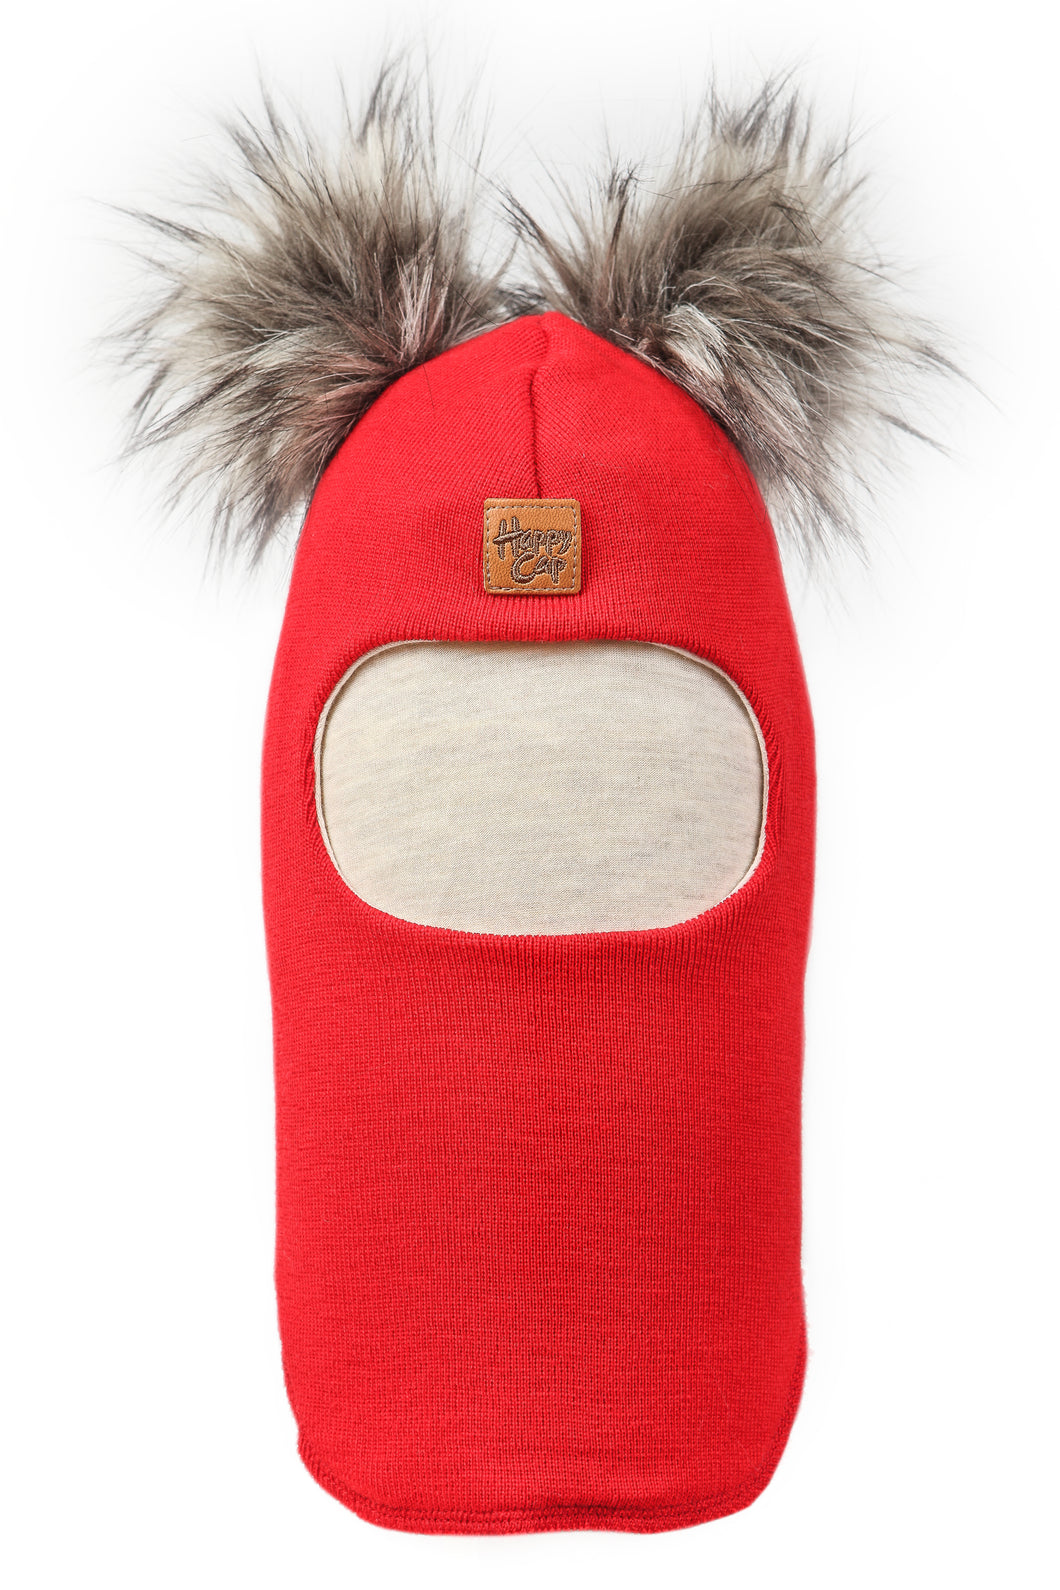 Merinovilla Kypärämyssy Tupla Furry, Punainen HAPPY CAP